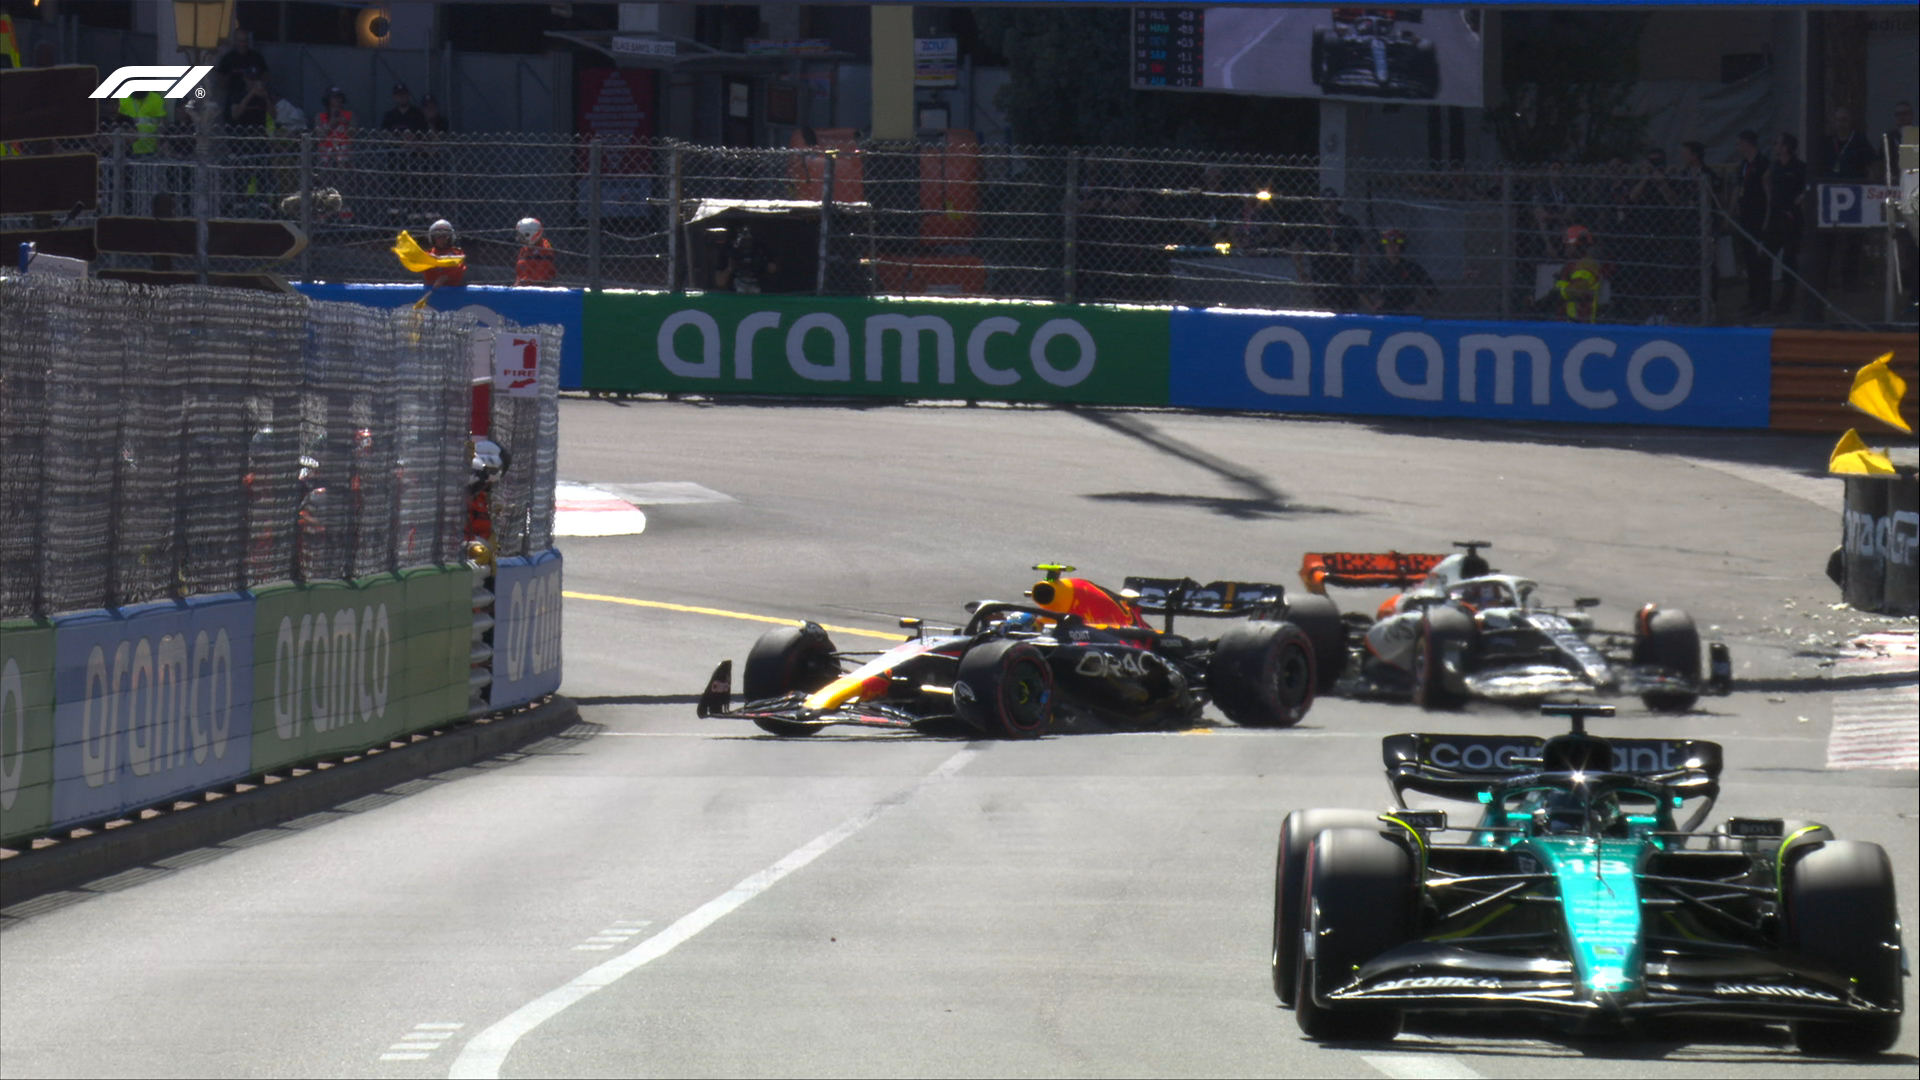 Incidente del piloto jalisciense en la curva 1 del circuito de Mónaco

Foto: Twitter/F1